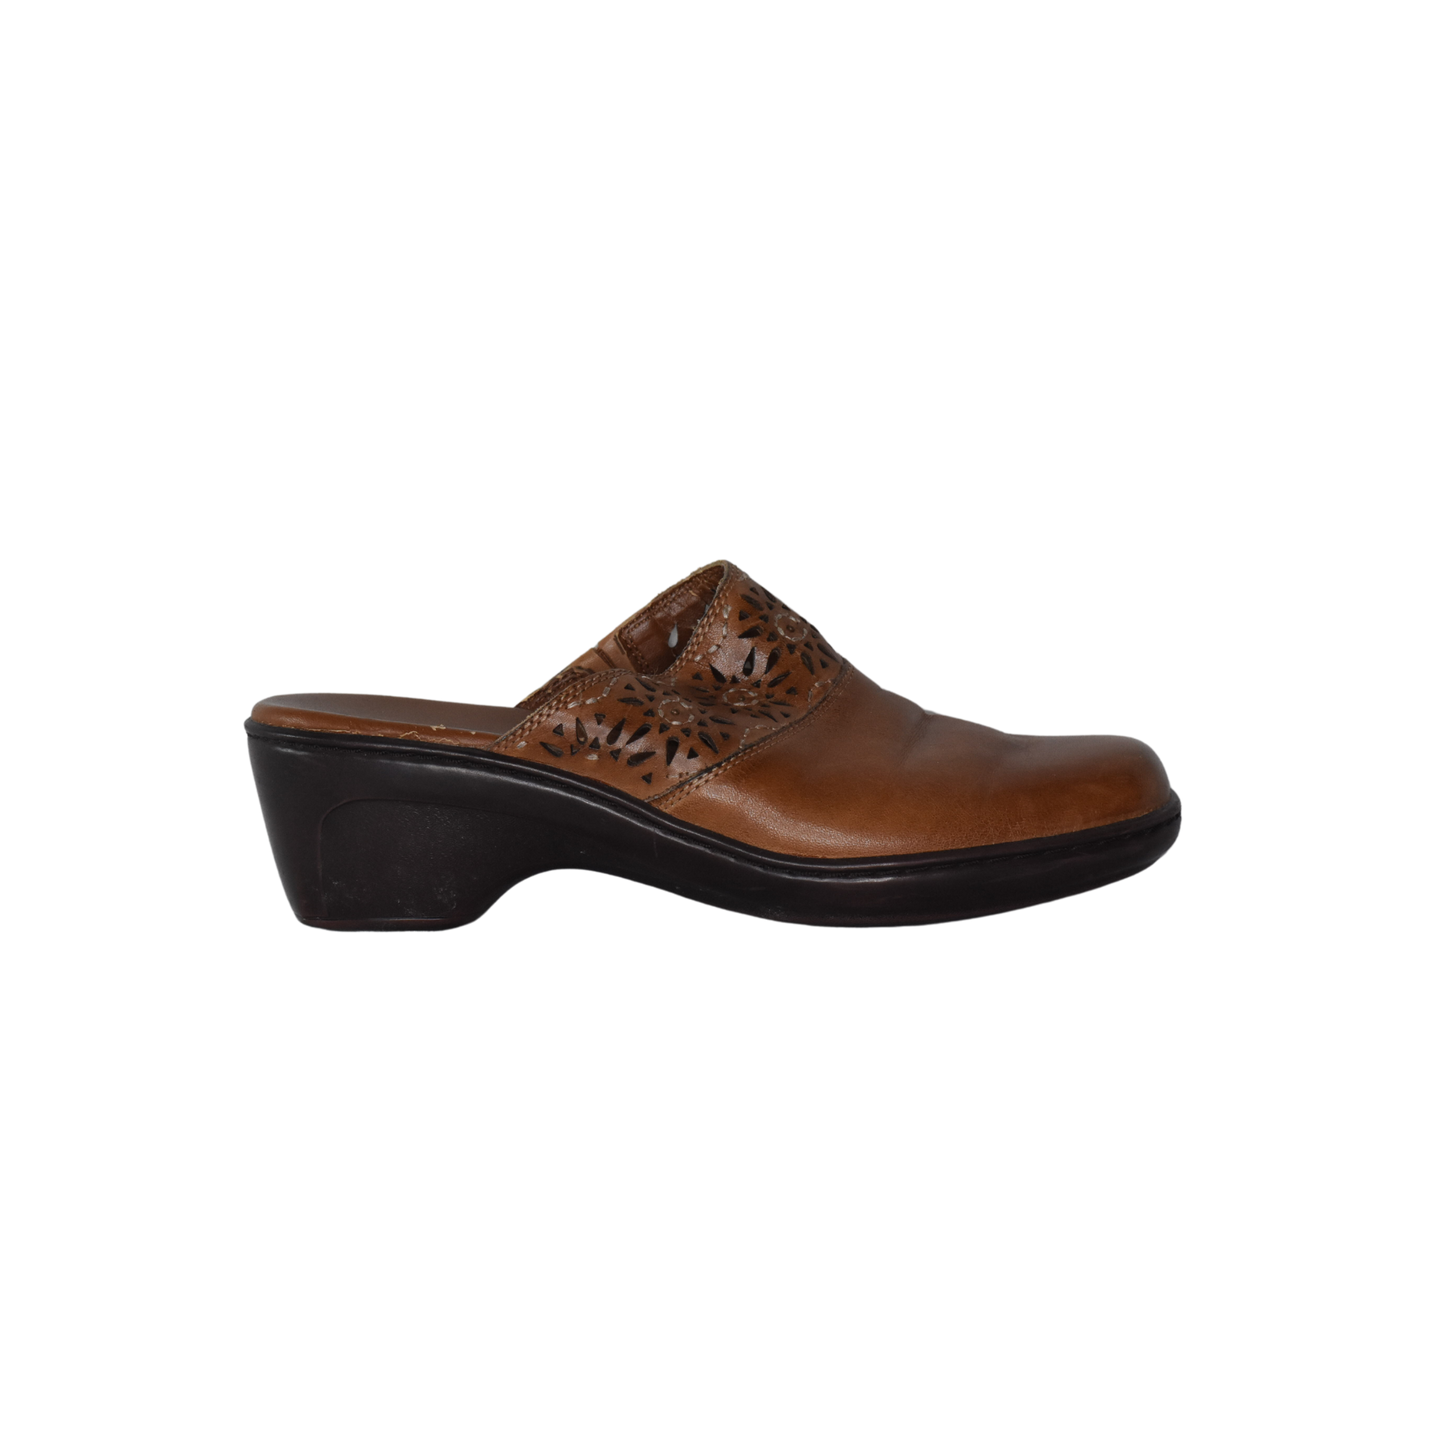 Clarks Sandal Clog Brown Size 6.5 SKU 000339-1